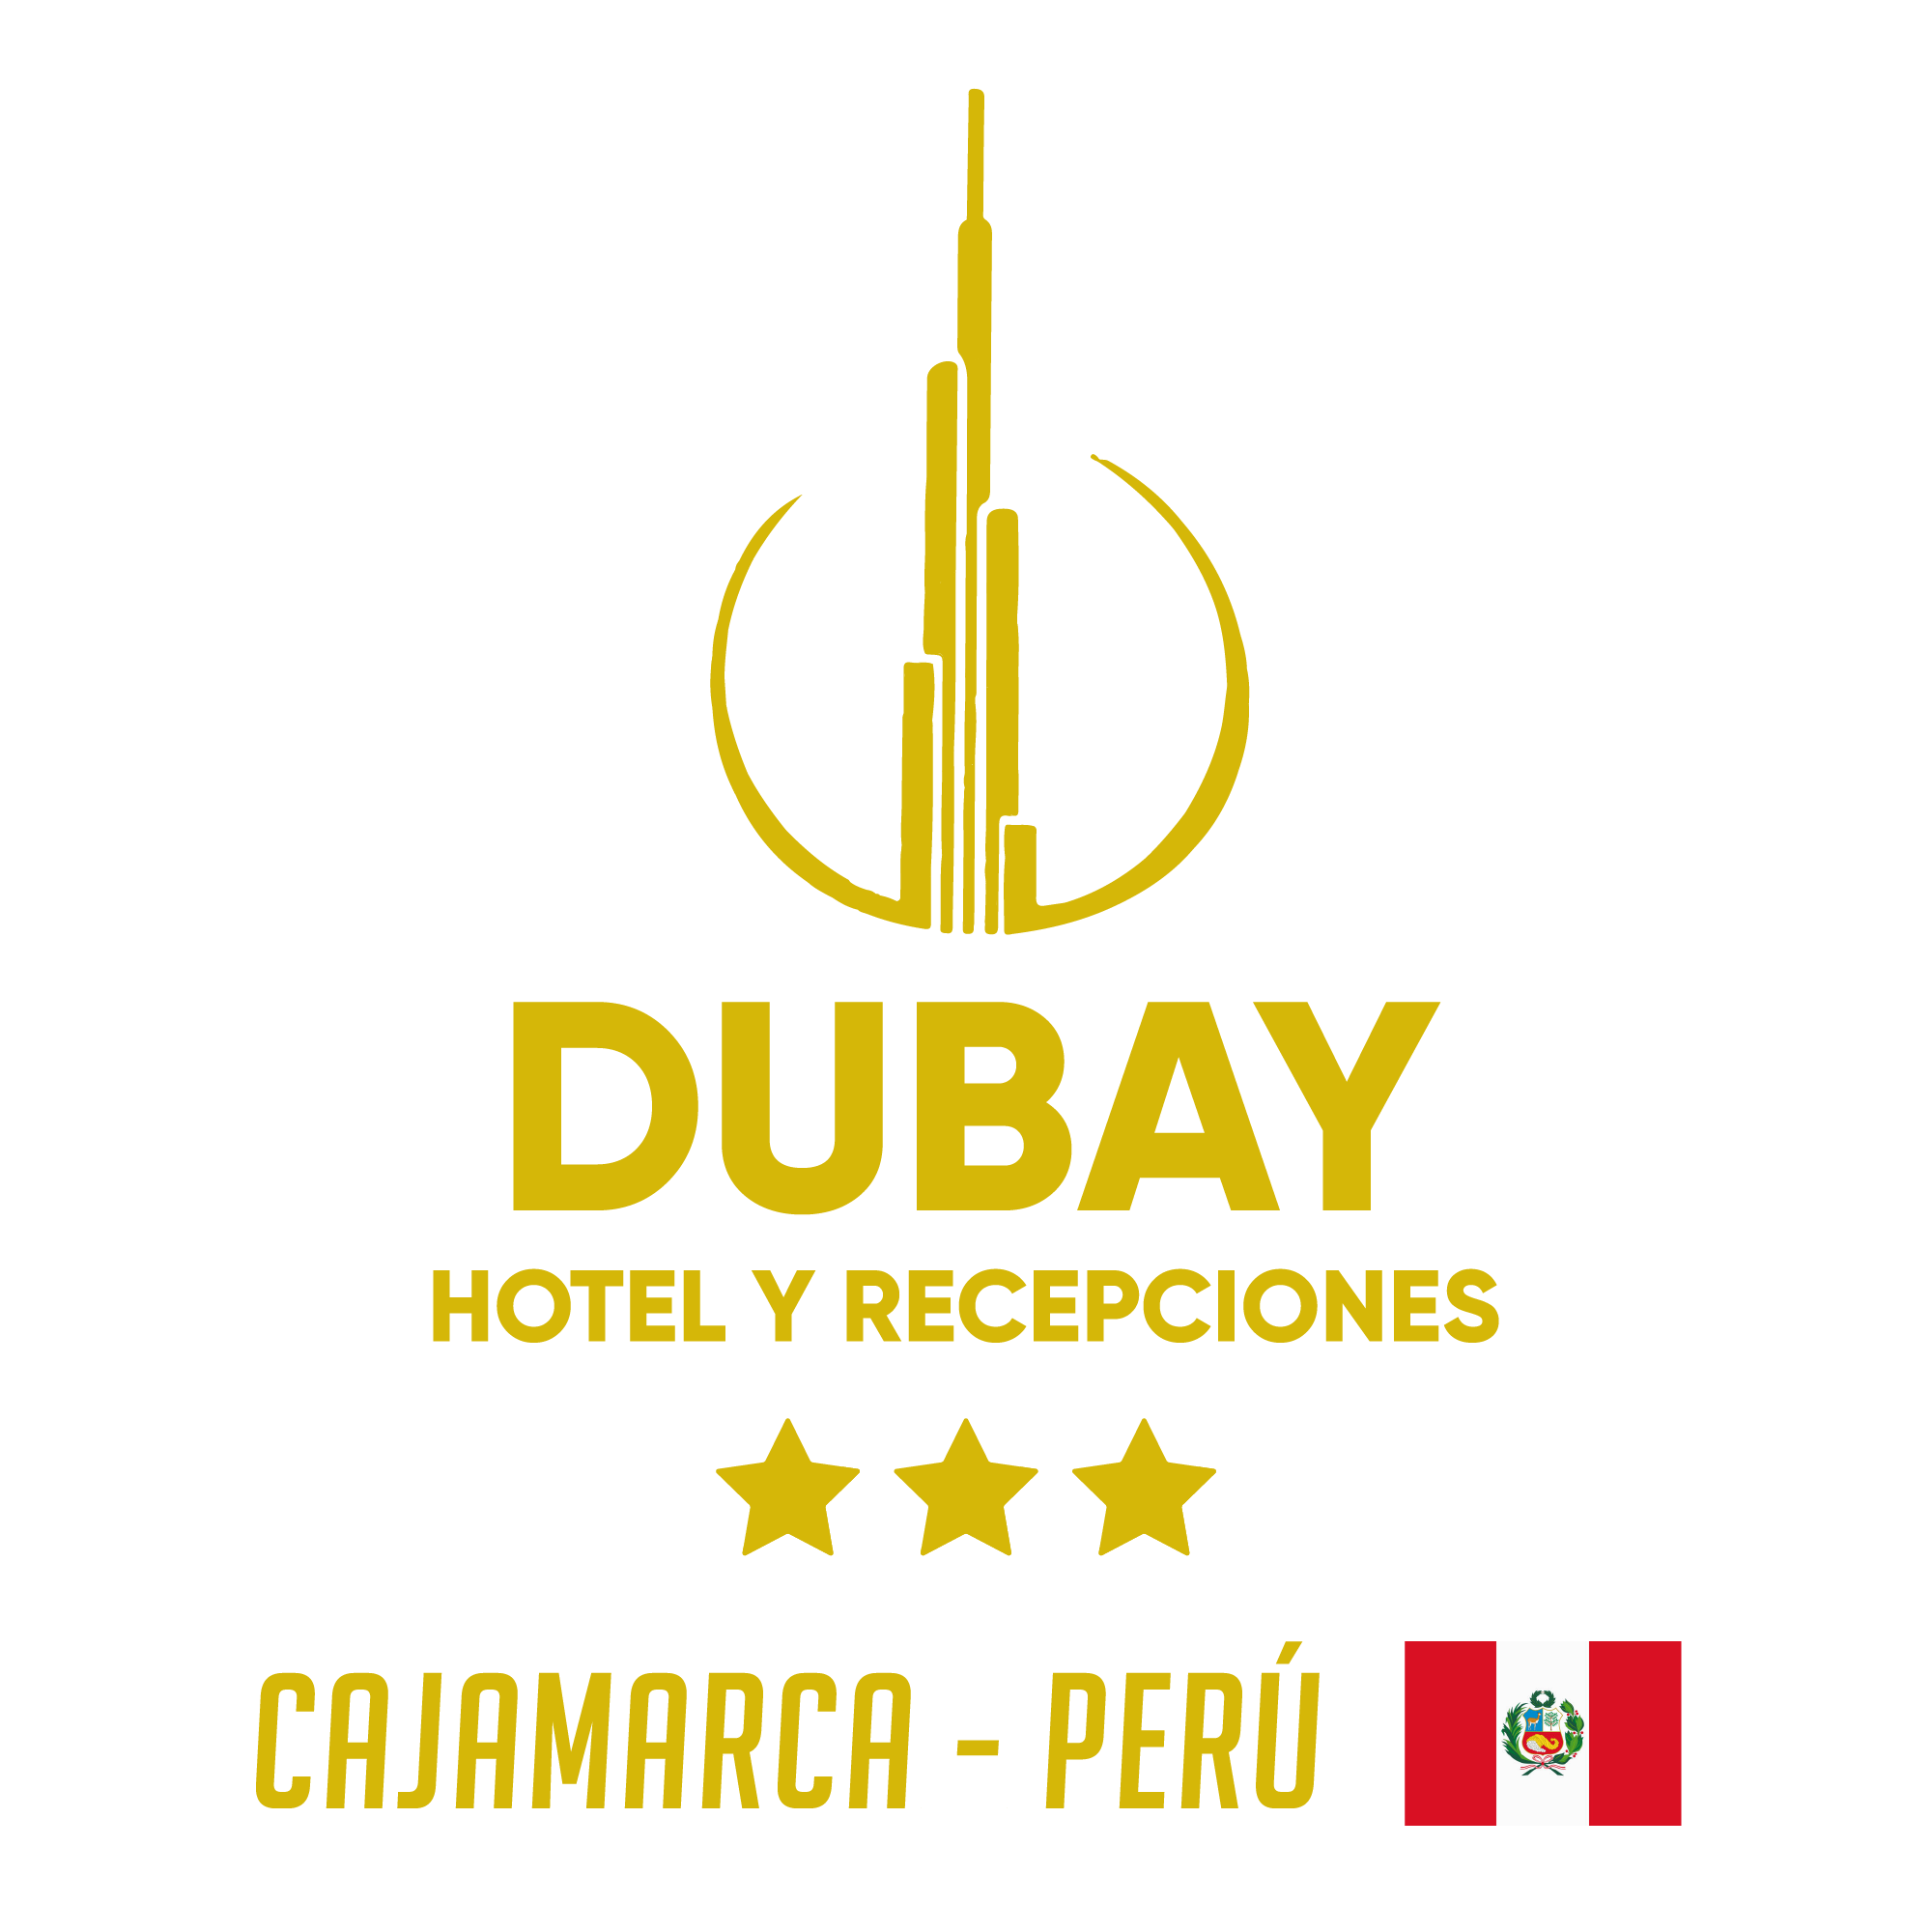 DUBAY hotel